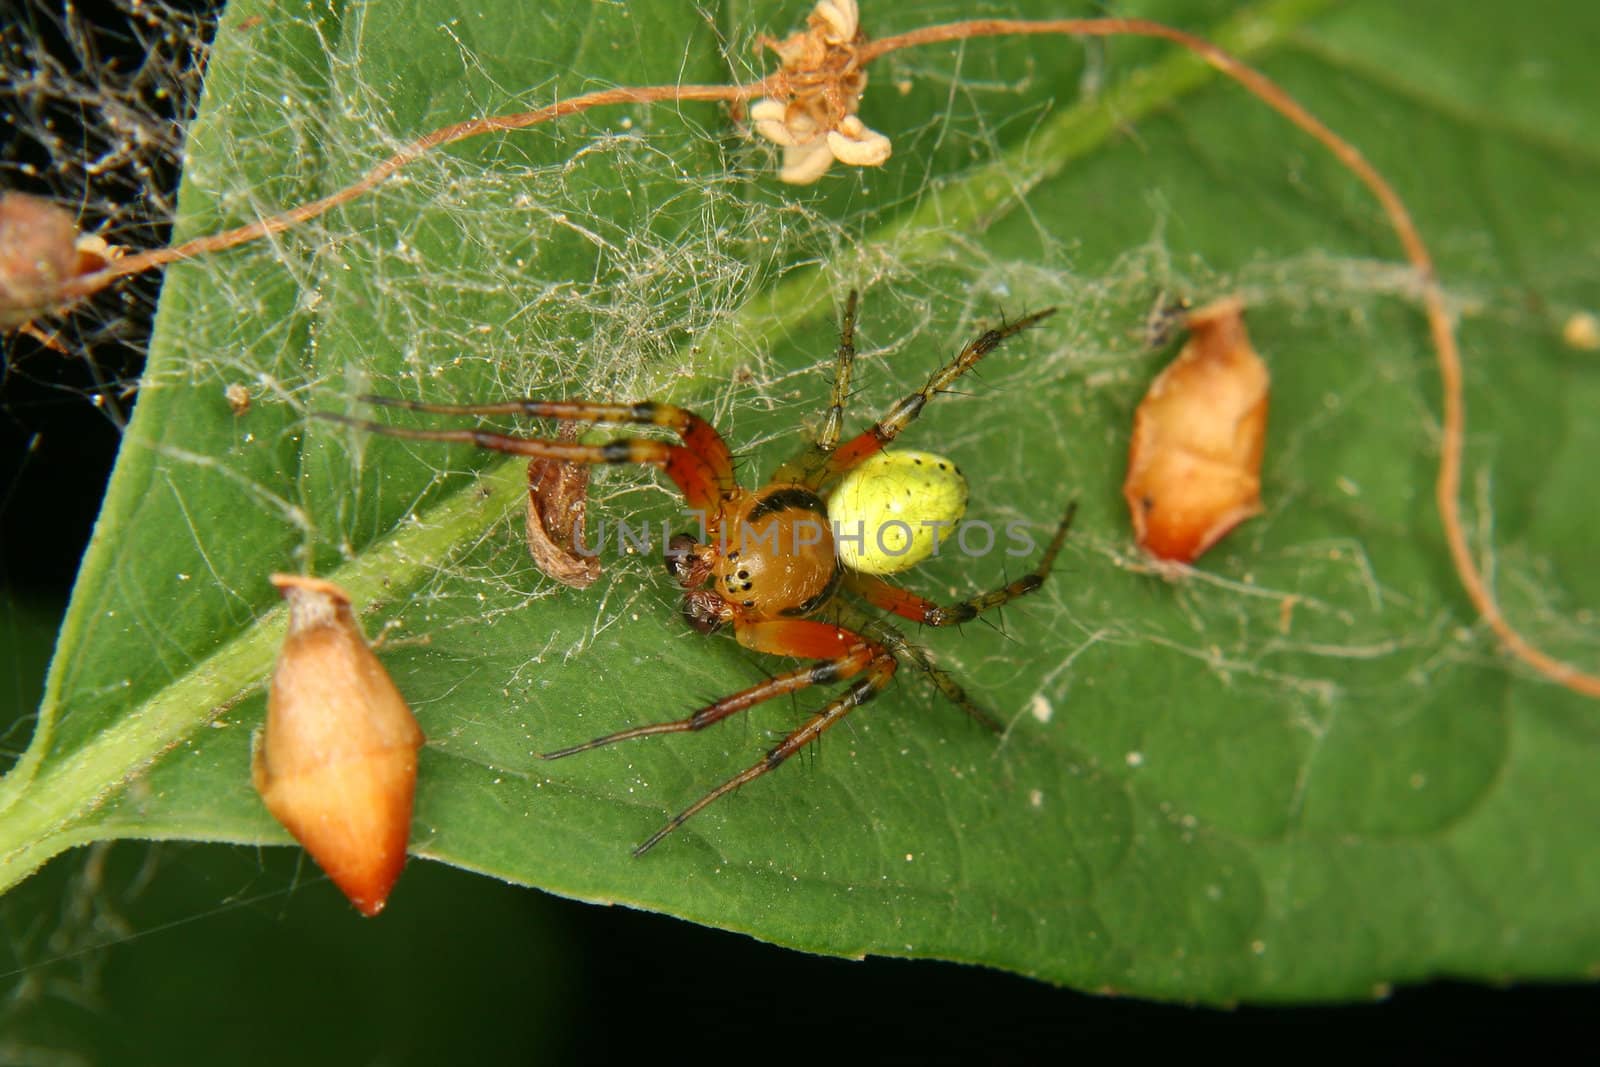 Cucumber green spider (Araniella cucurbitina) by tdietrich